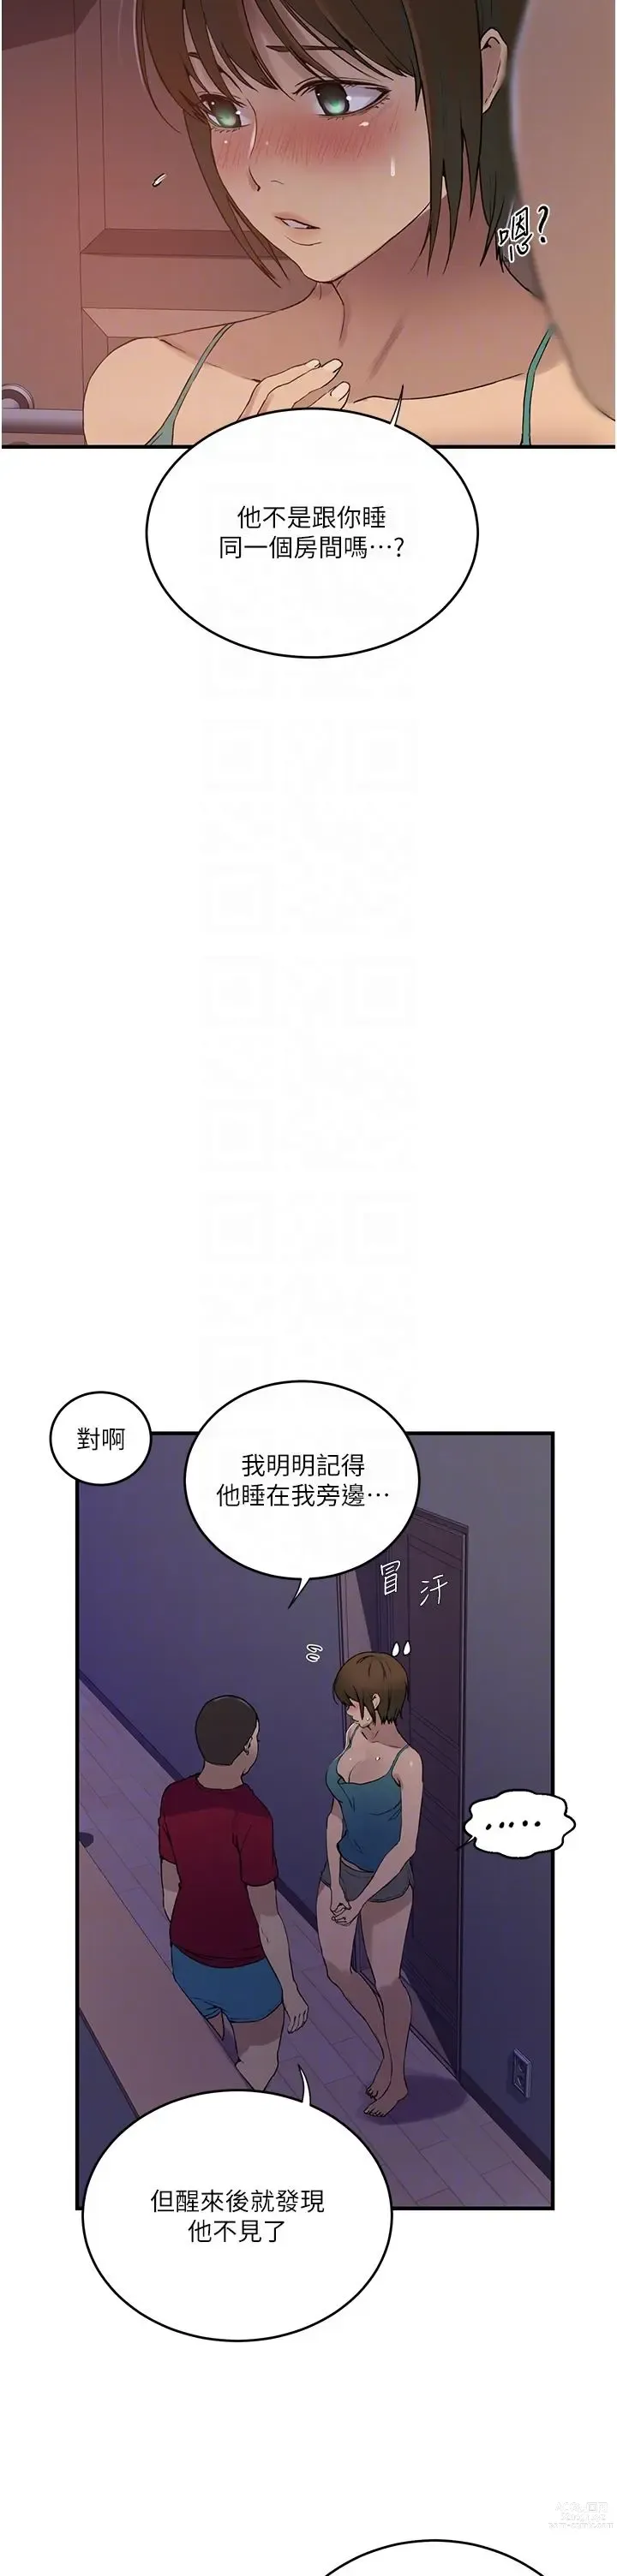 Page 7 of manga 秘密教学/The Class Of The Secret 181-196